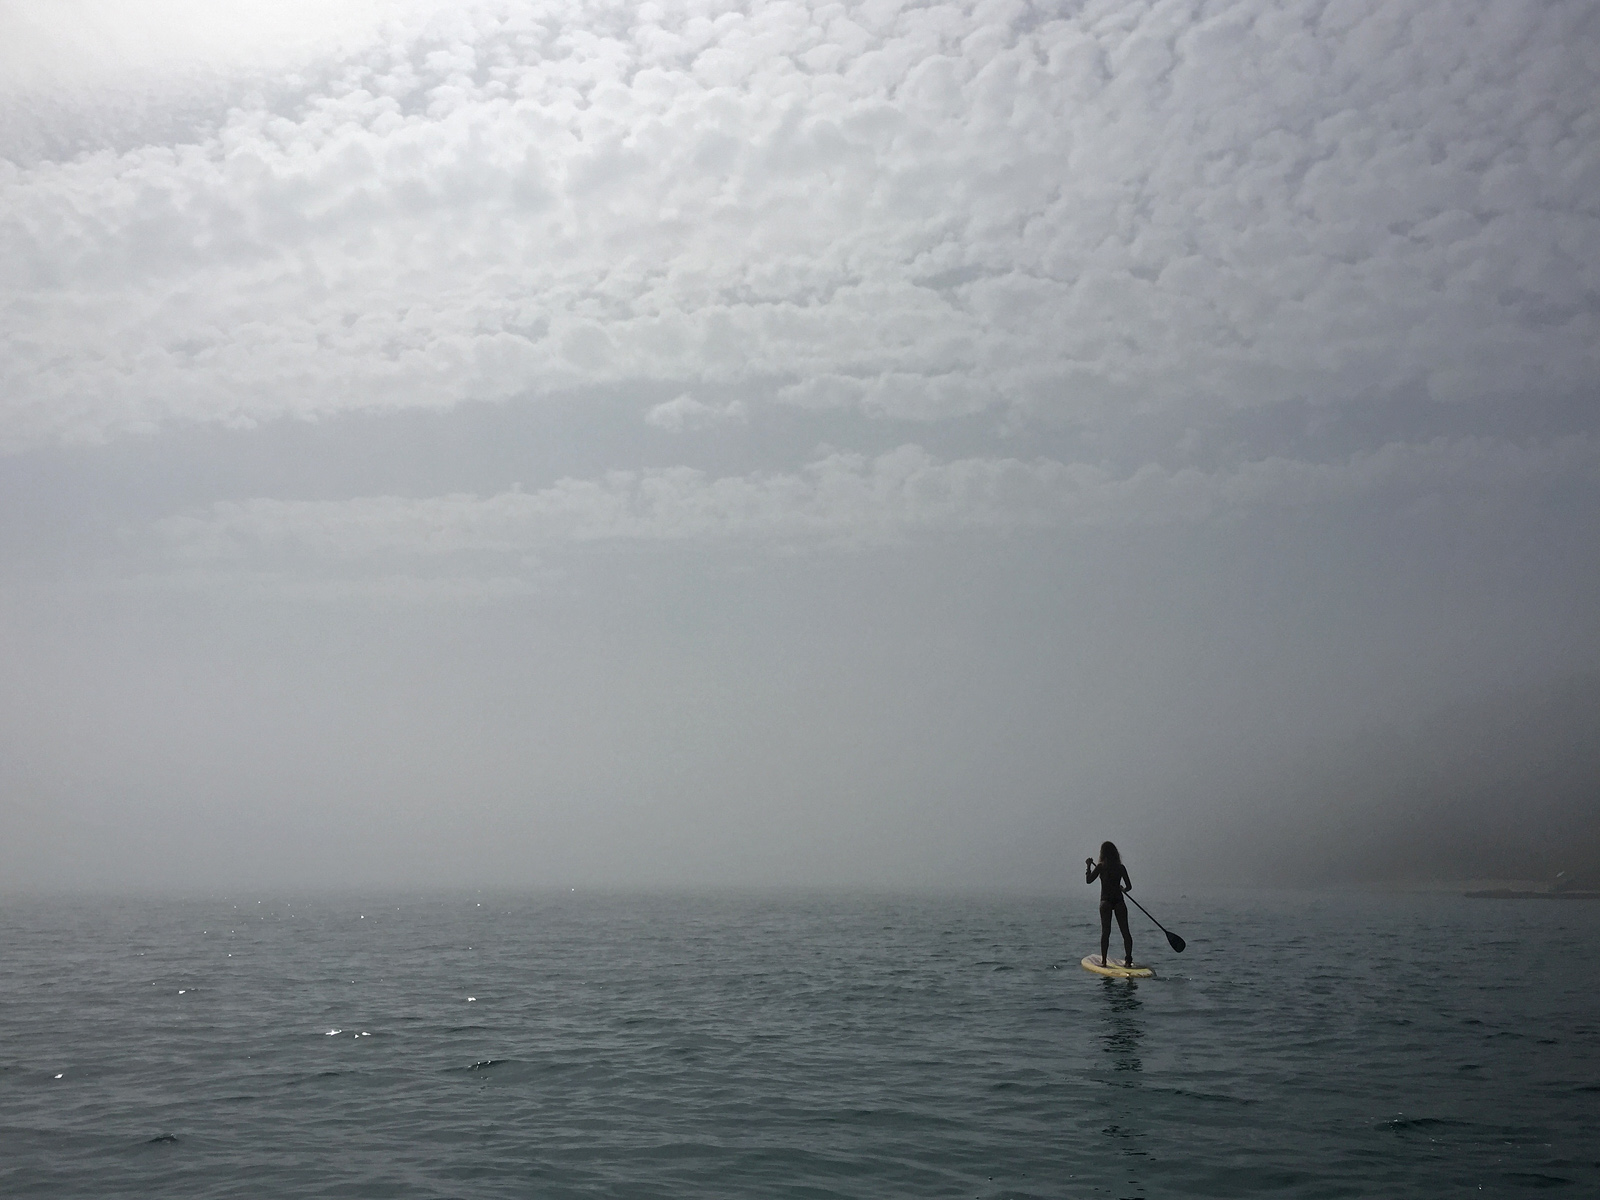 Paddleboarding in dense fog